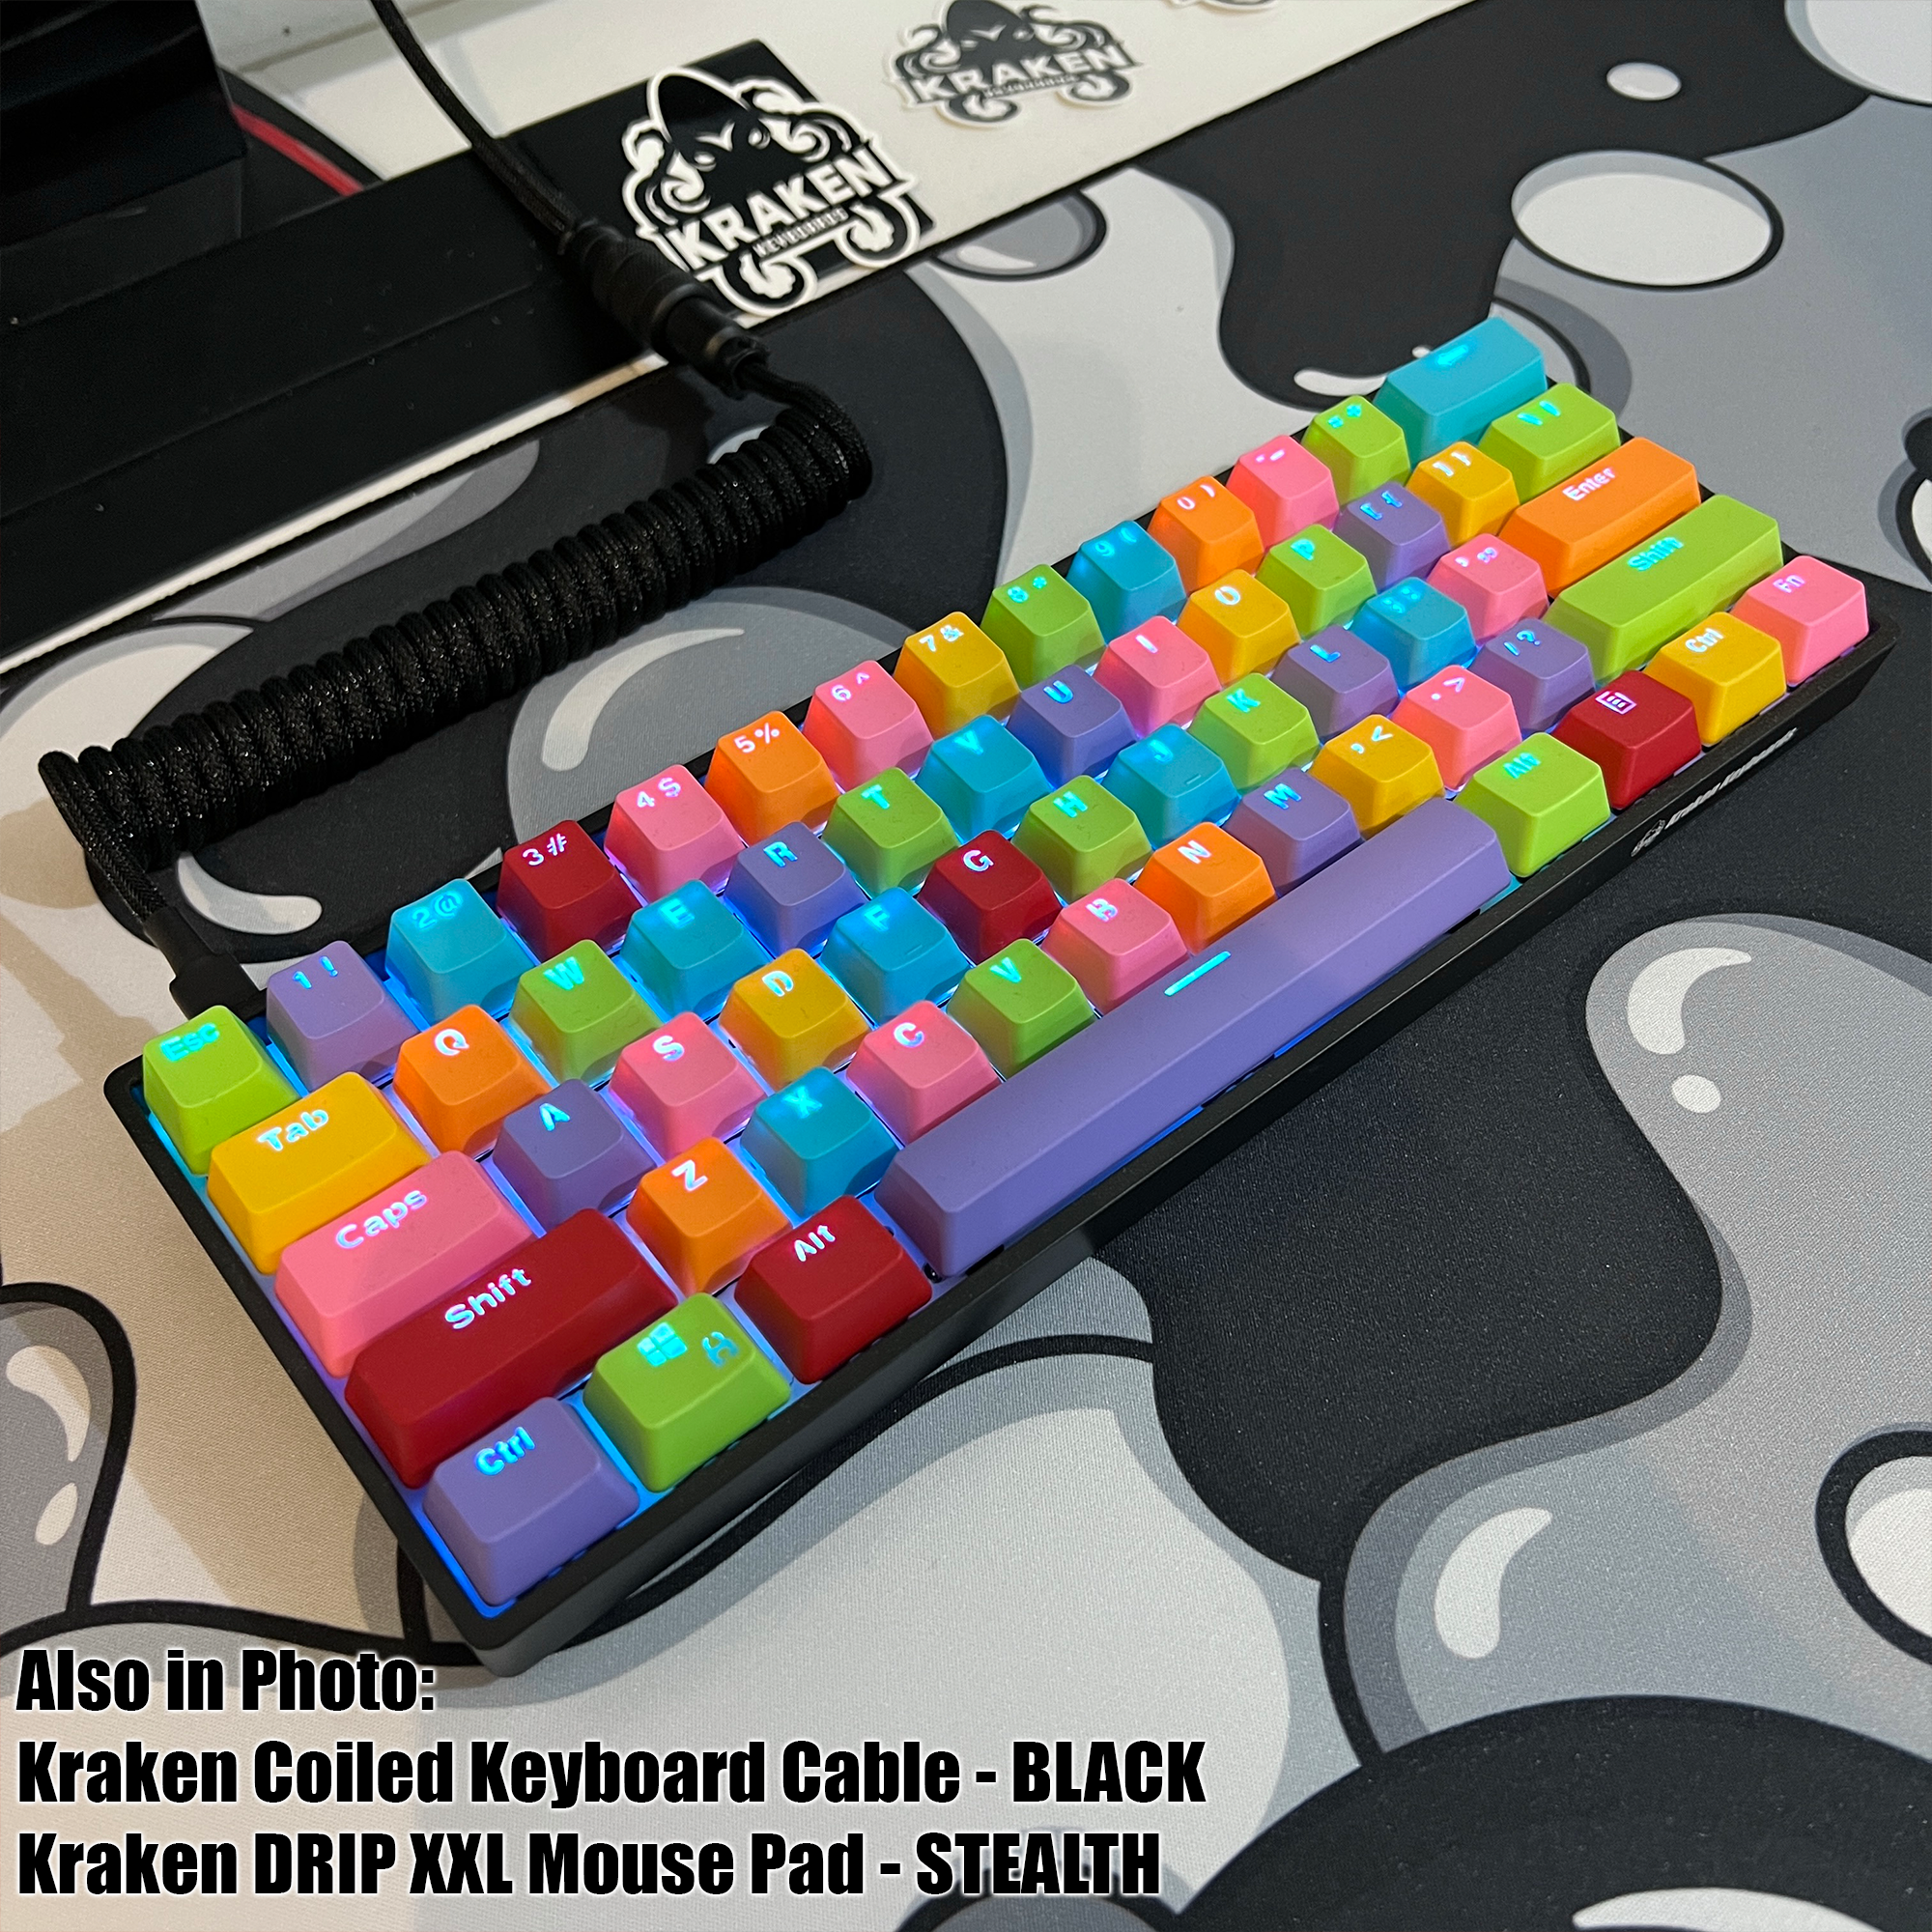 WHITEOUT Edition, Kraken Pro 60% Mechanical Keyboard